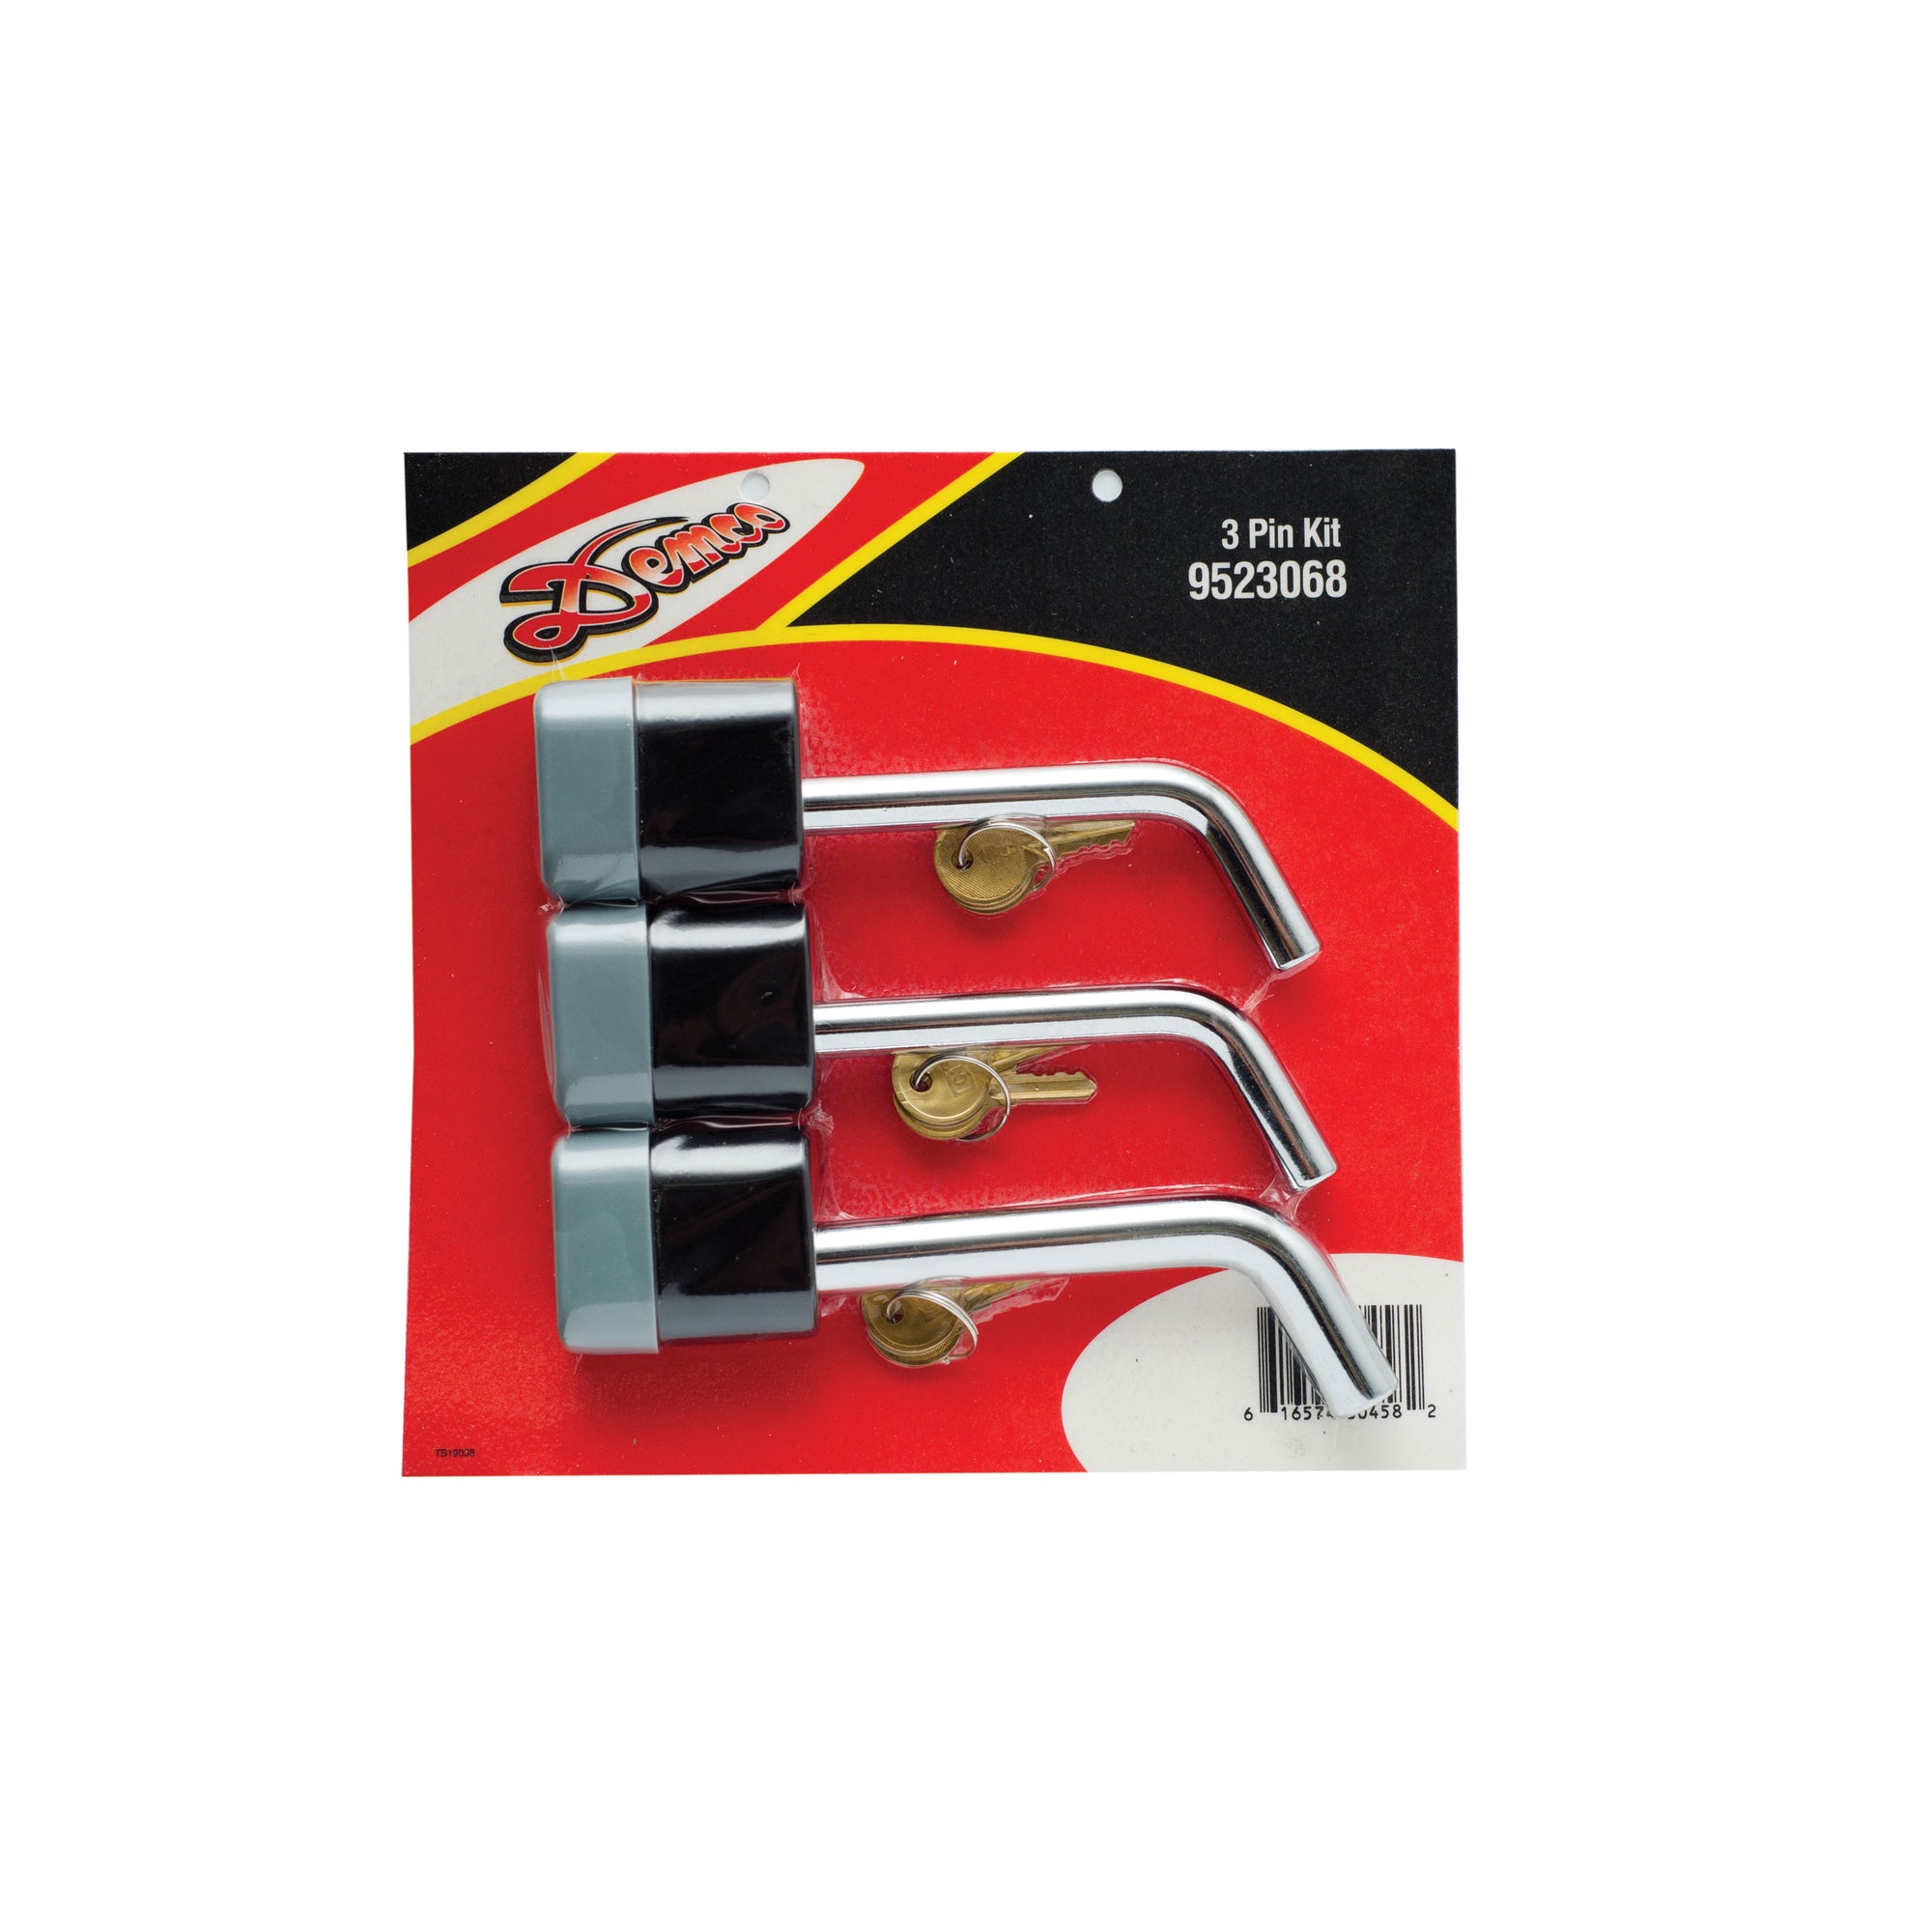 Demco 9523068 Locking Pin Kit for Tow Bar - 3-Piece Kit